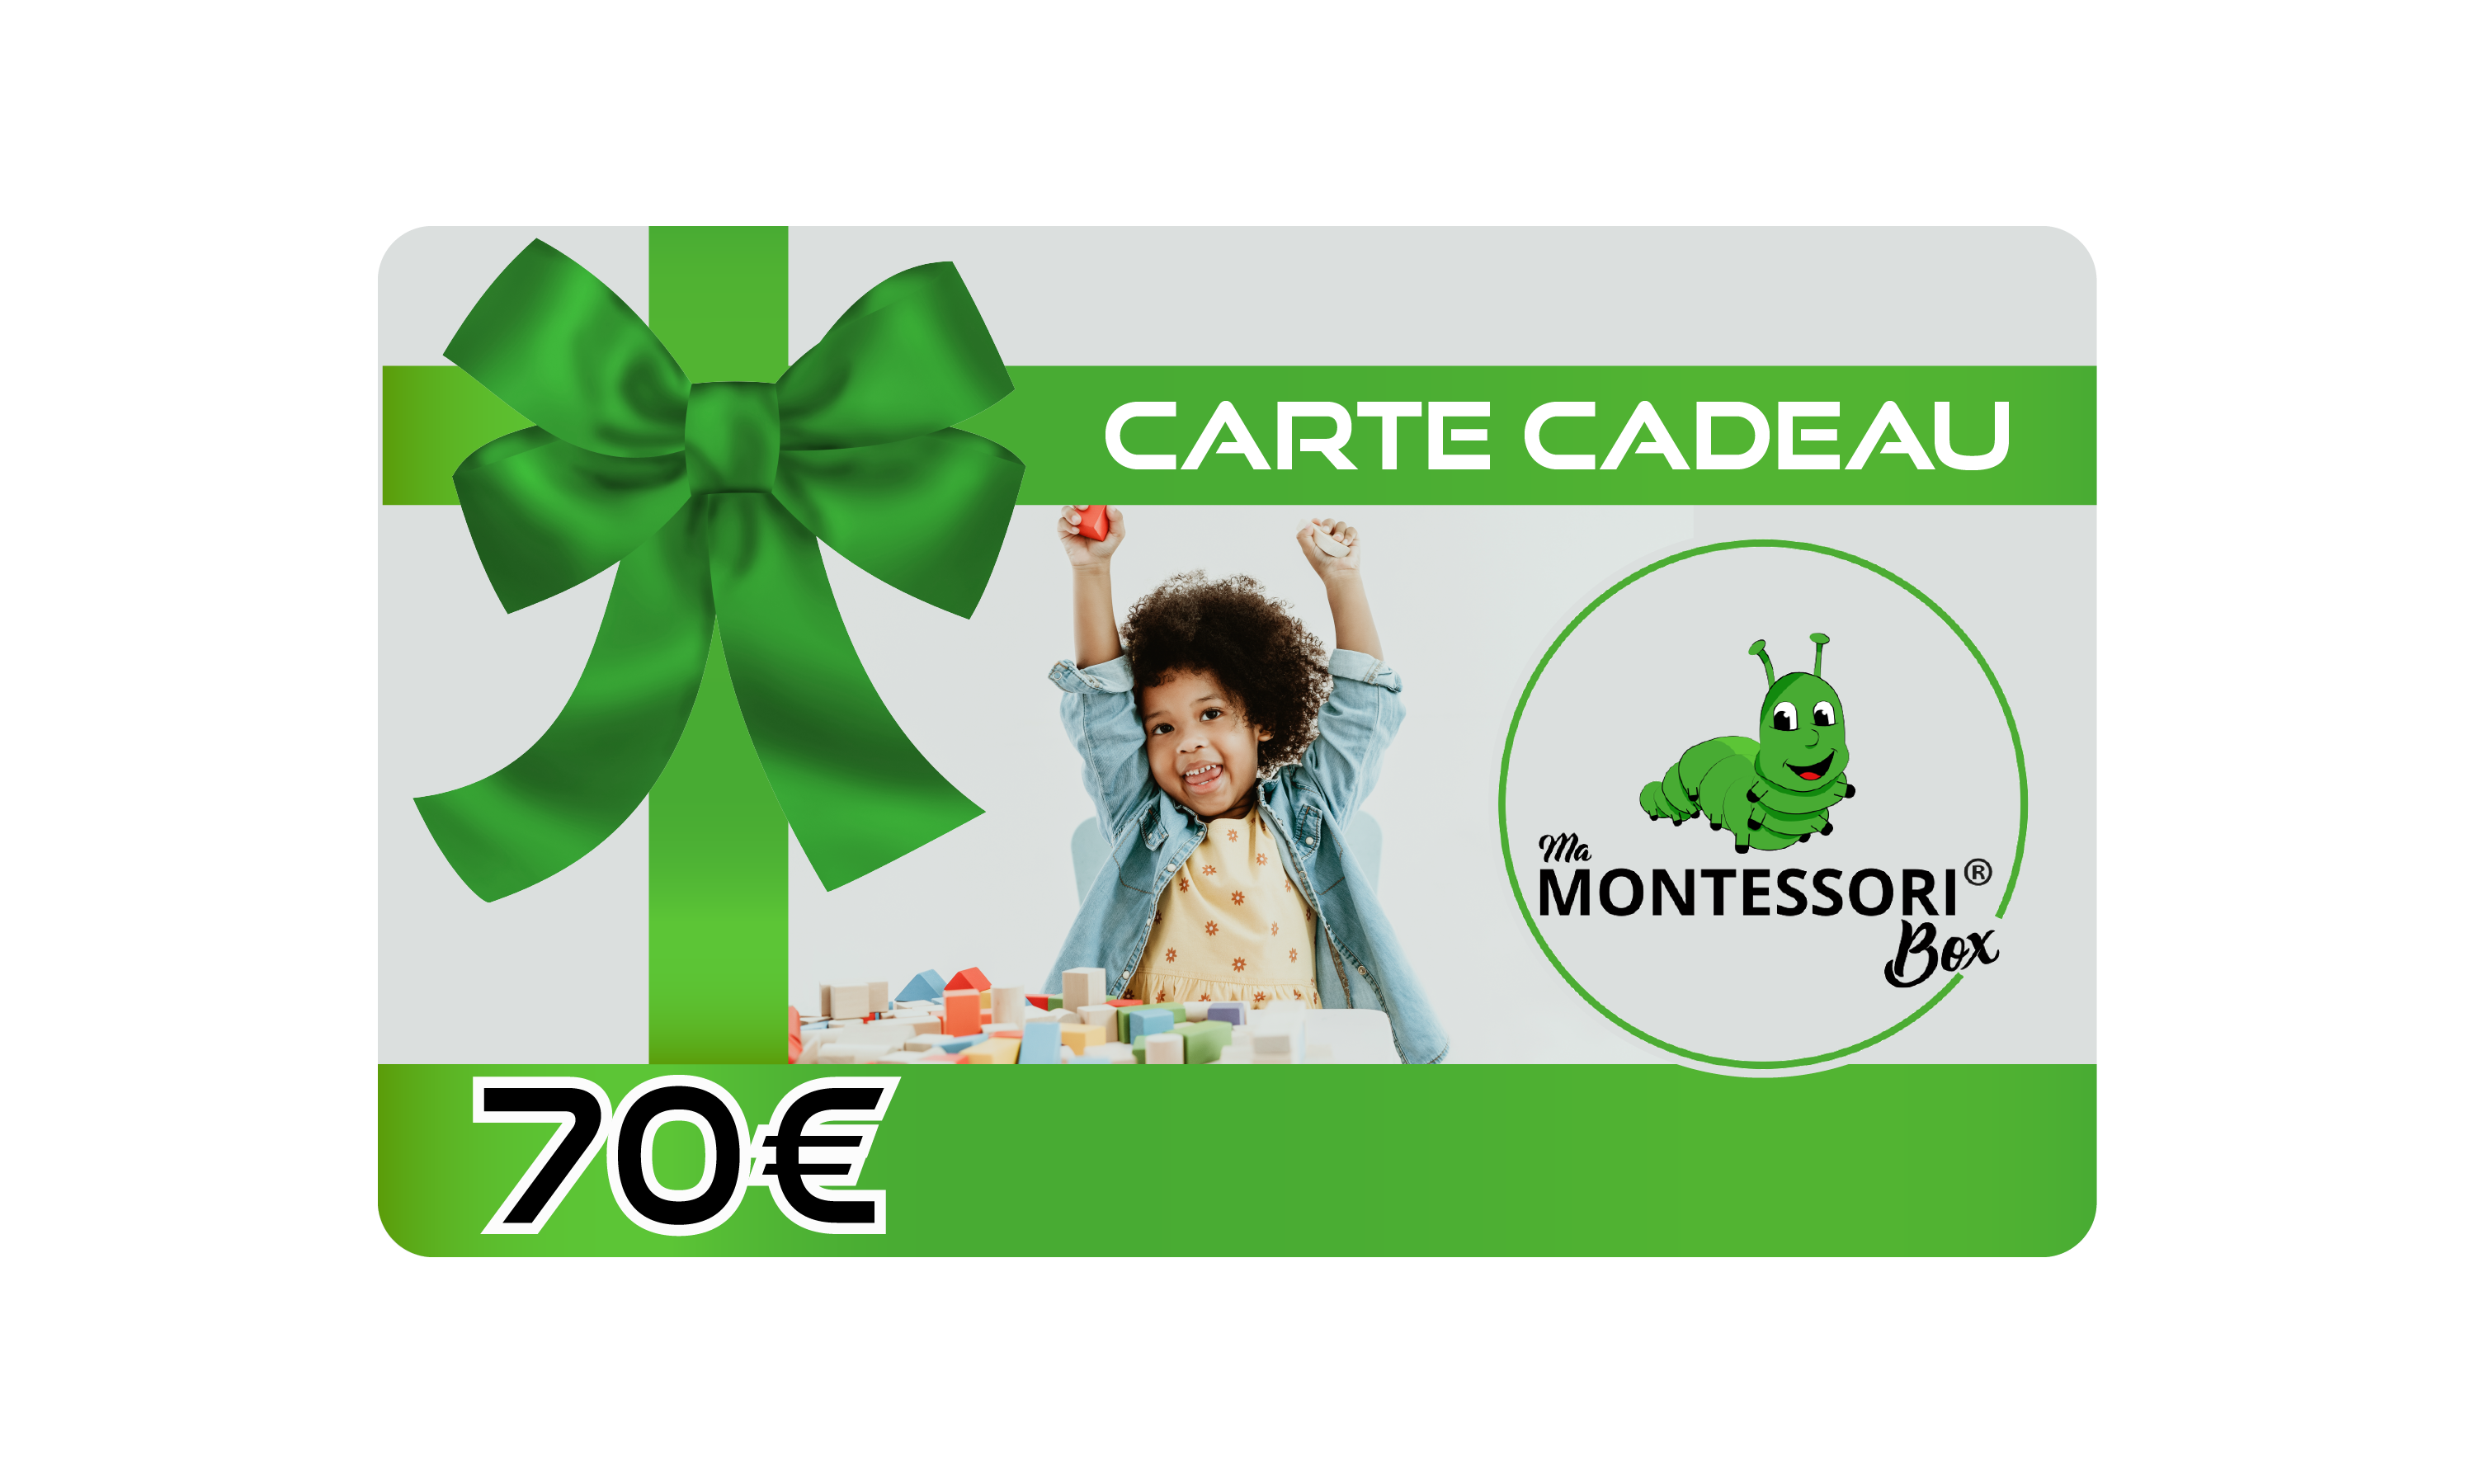 carte cadeau Montessori 70 euros